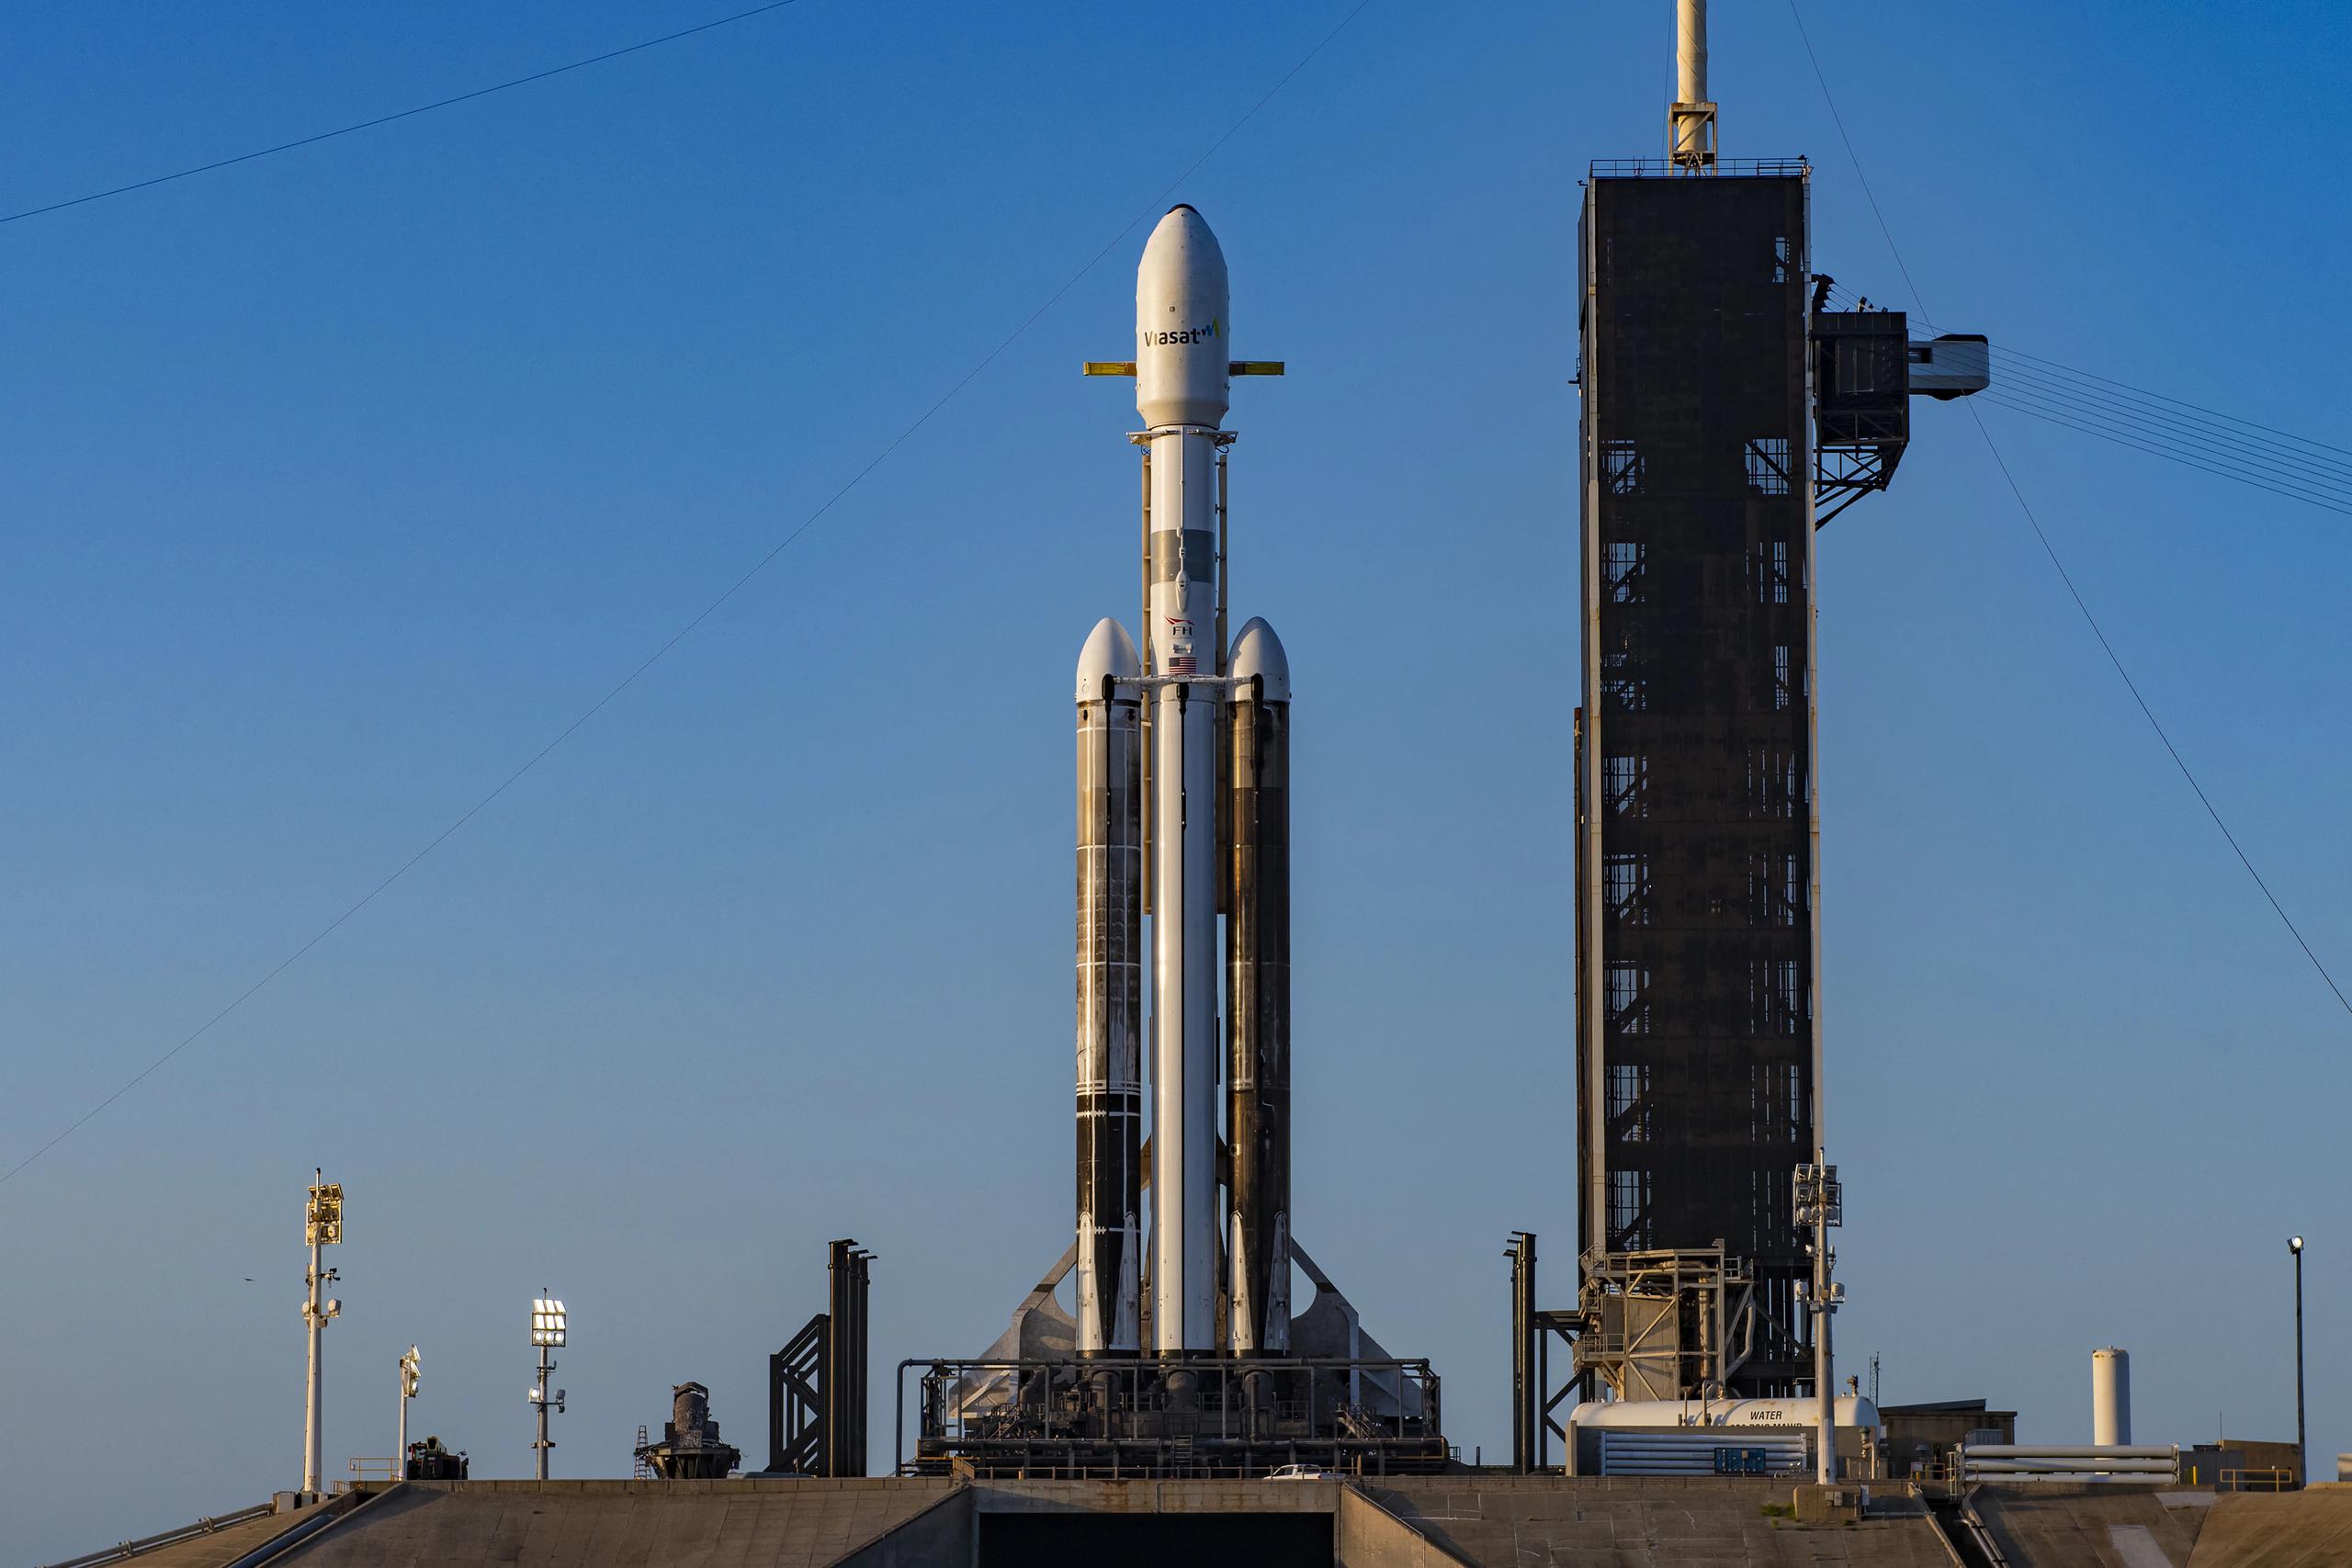 Fotografía cedida por SpaceX donde se aprecia el cohete Falcon que lleva la misión ViaSat-3 Americas instalado en la plataforma de lanzamiento LC-39A en Cabo Cañaveral, Florida. EFE/SpaceX
